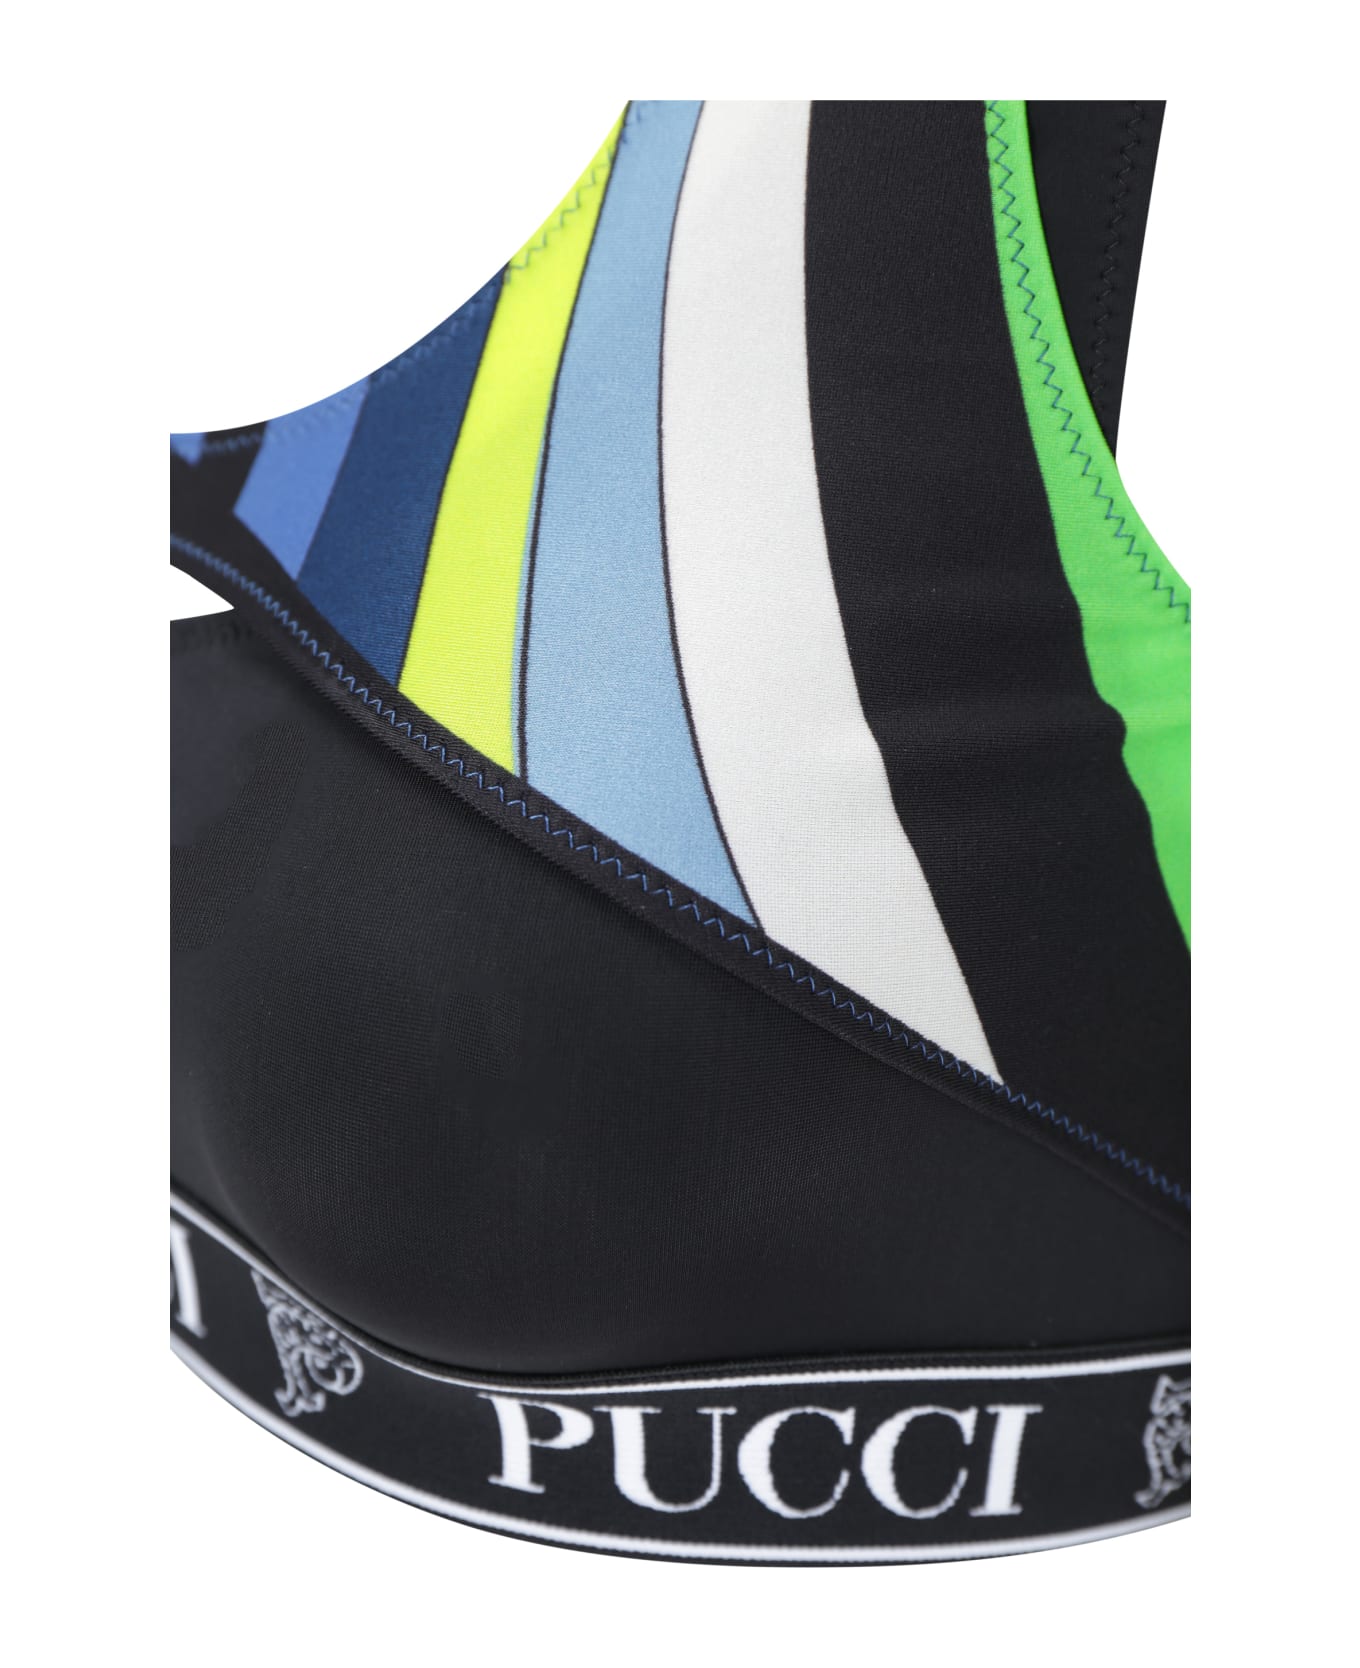 Pucci Sport Top - Verde/avio